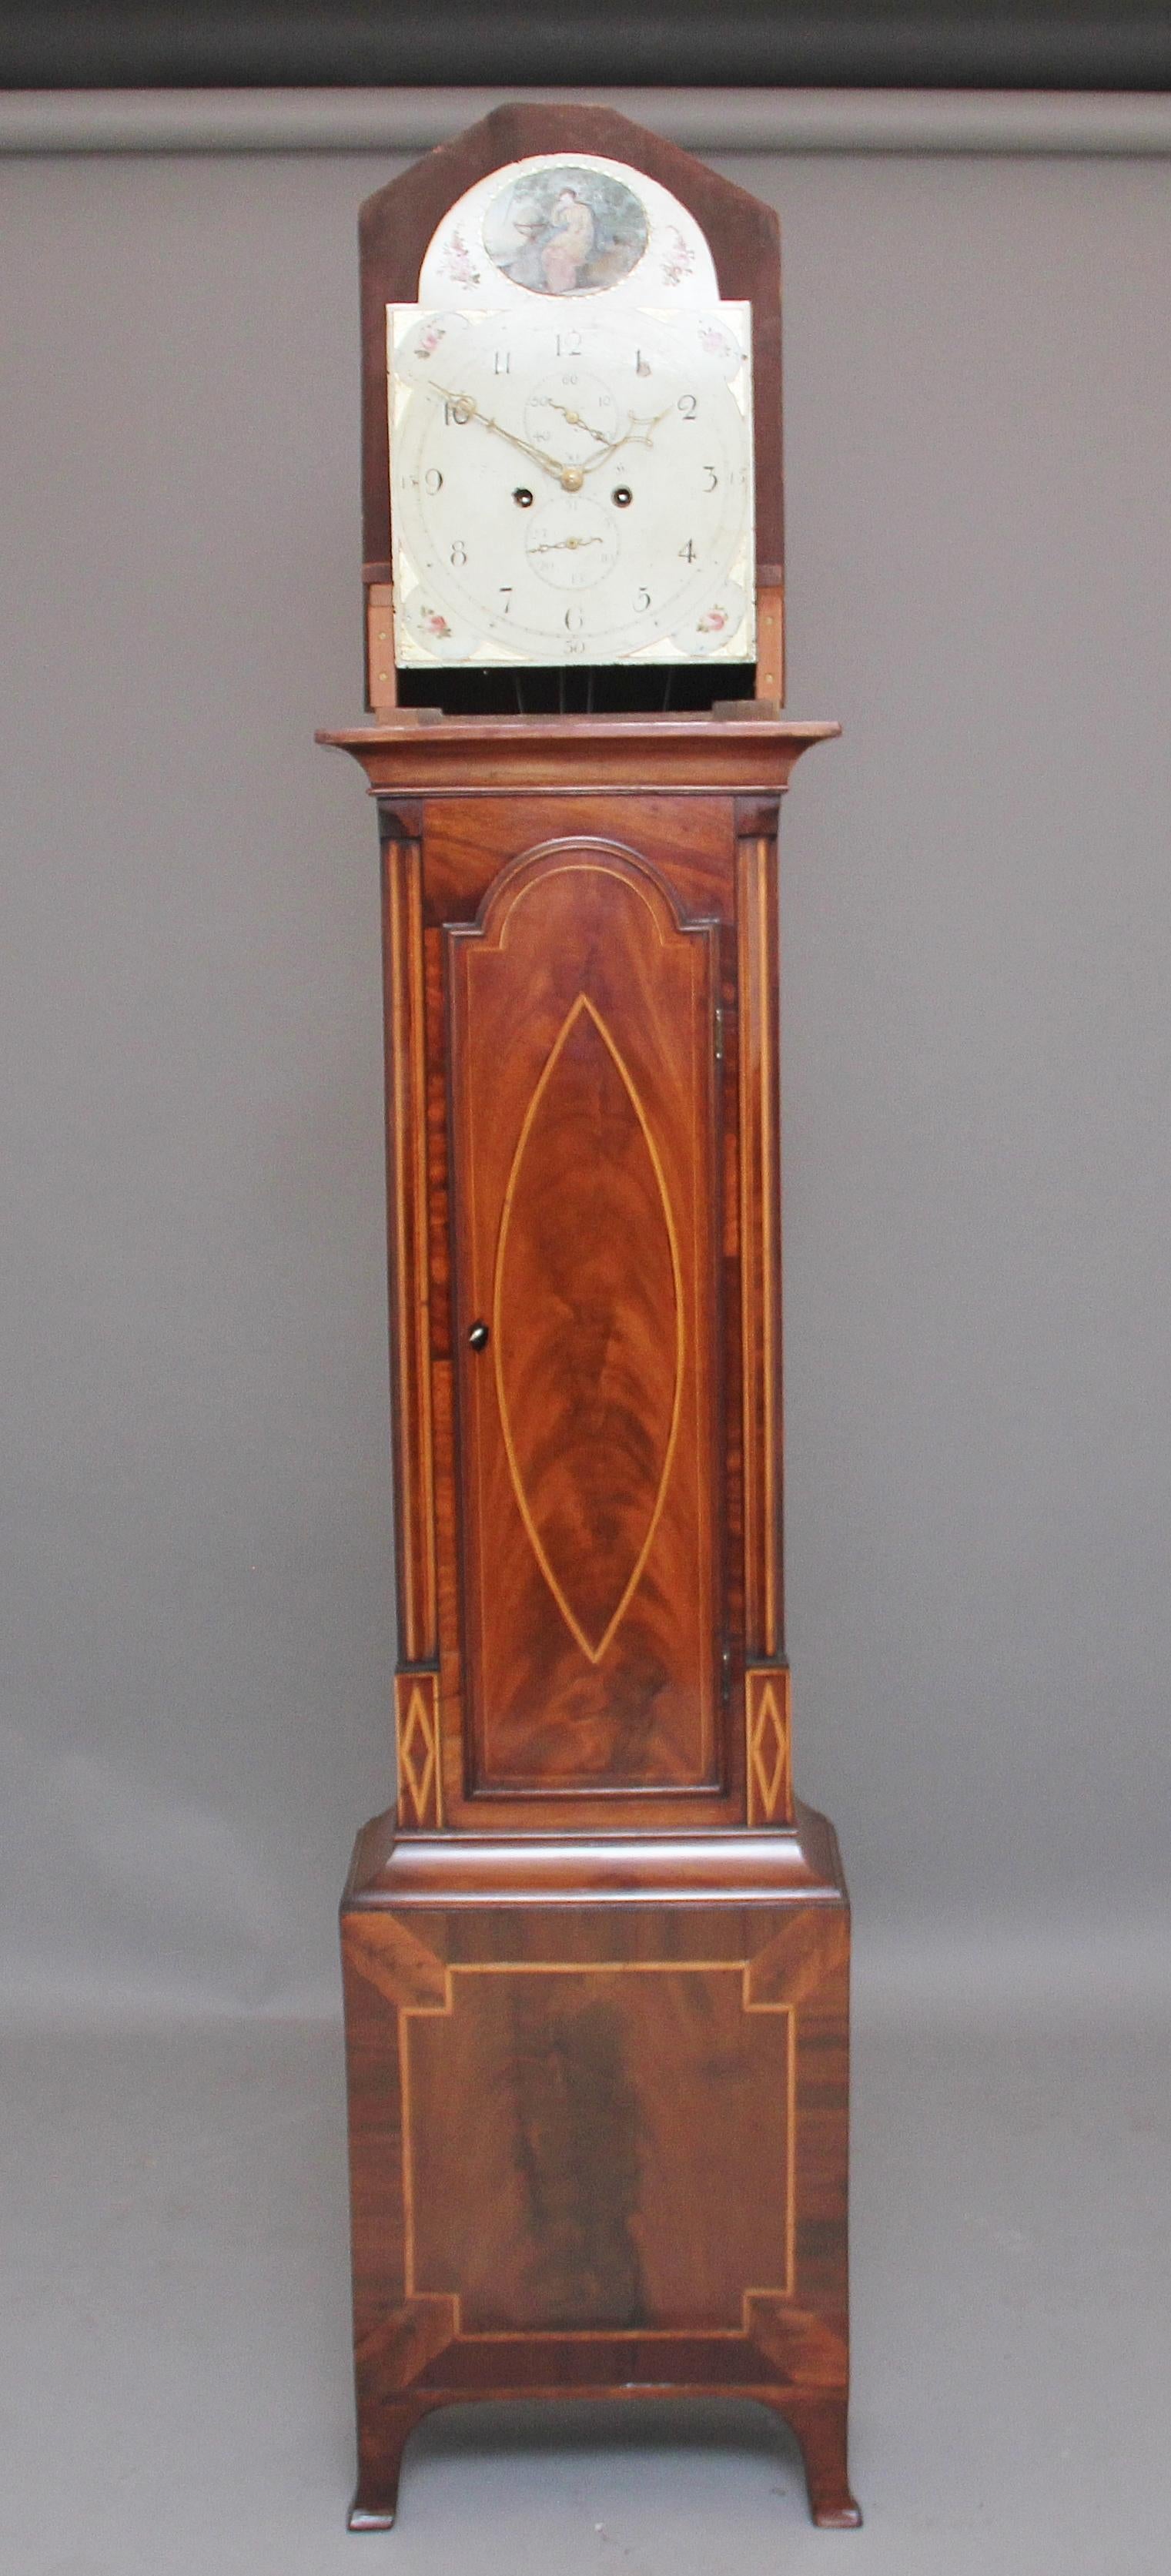 Une belle horloge de huit jours en acajou du 19ème siècle par Todd de Hull, ayant un cadran peint en arc avec un cadran des secondes, le boîtier en acajou a un capot en forme de pagode, l'acajou est incrusté de buis et d'ébène et a une incrustation